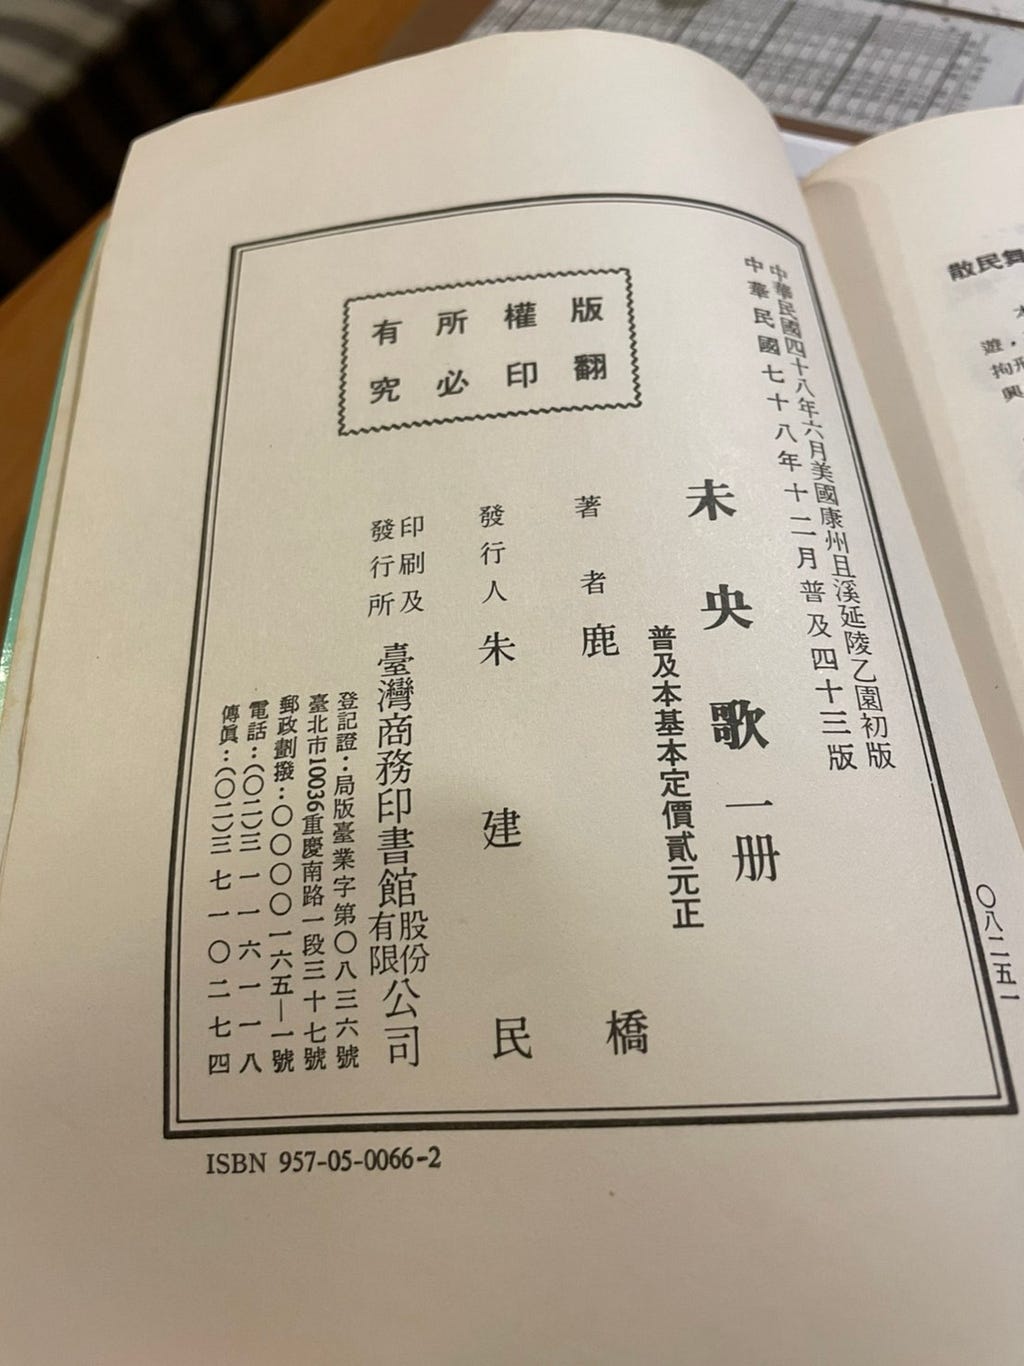 作者鹿橋，他的簽名看起來像麻糬，哈哈。未央歌的第一版於民國四十三年出版，比我的父母都還老呢